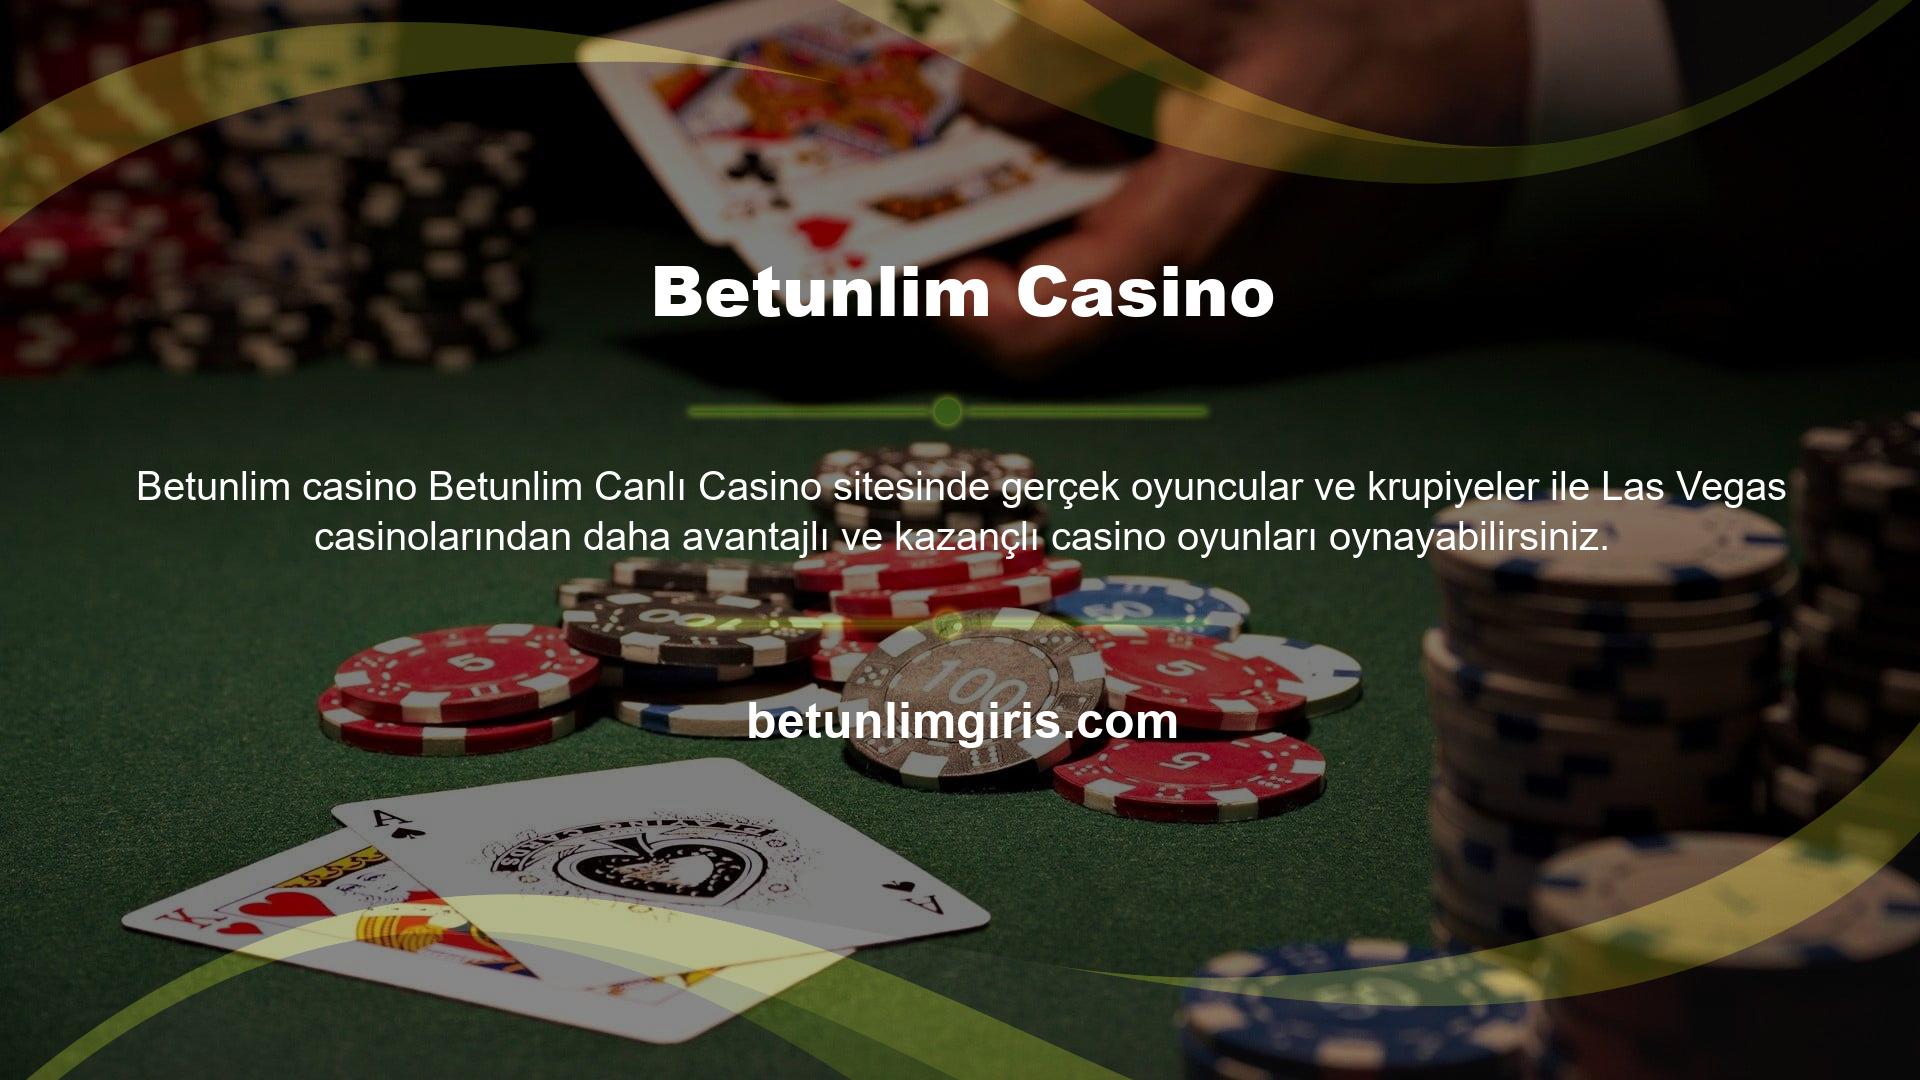 Gün boyunca, özellikle Betunlim giriş sorunu yaşayan casino oyuncuları için detaylı bonus kampanyaları yürütün